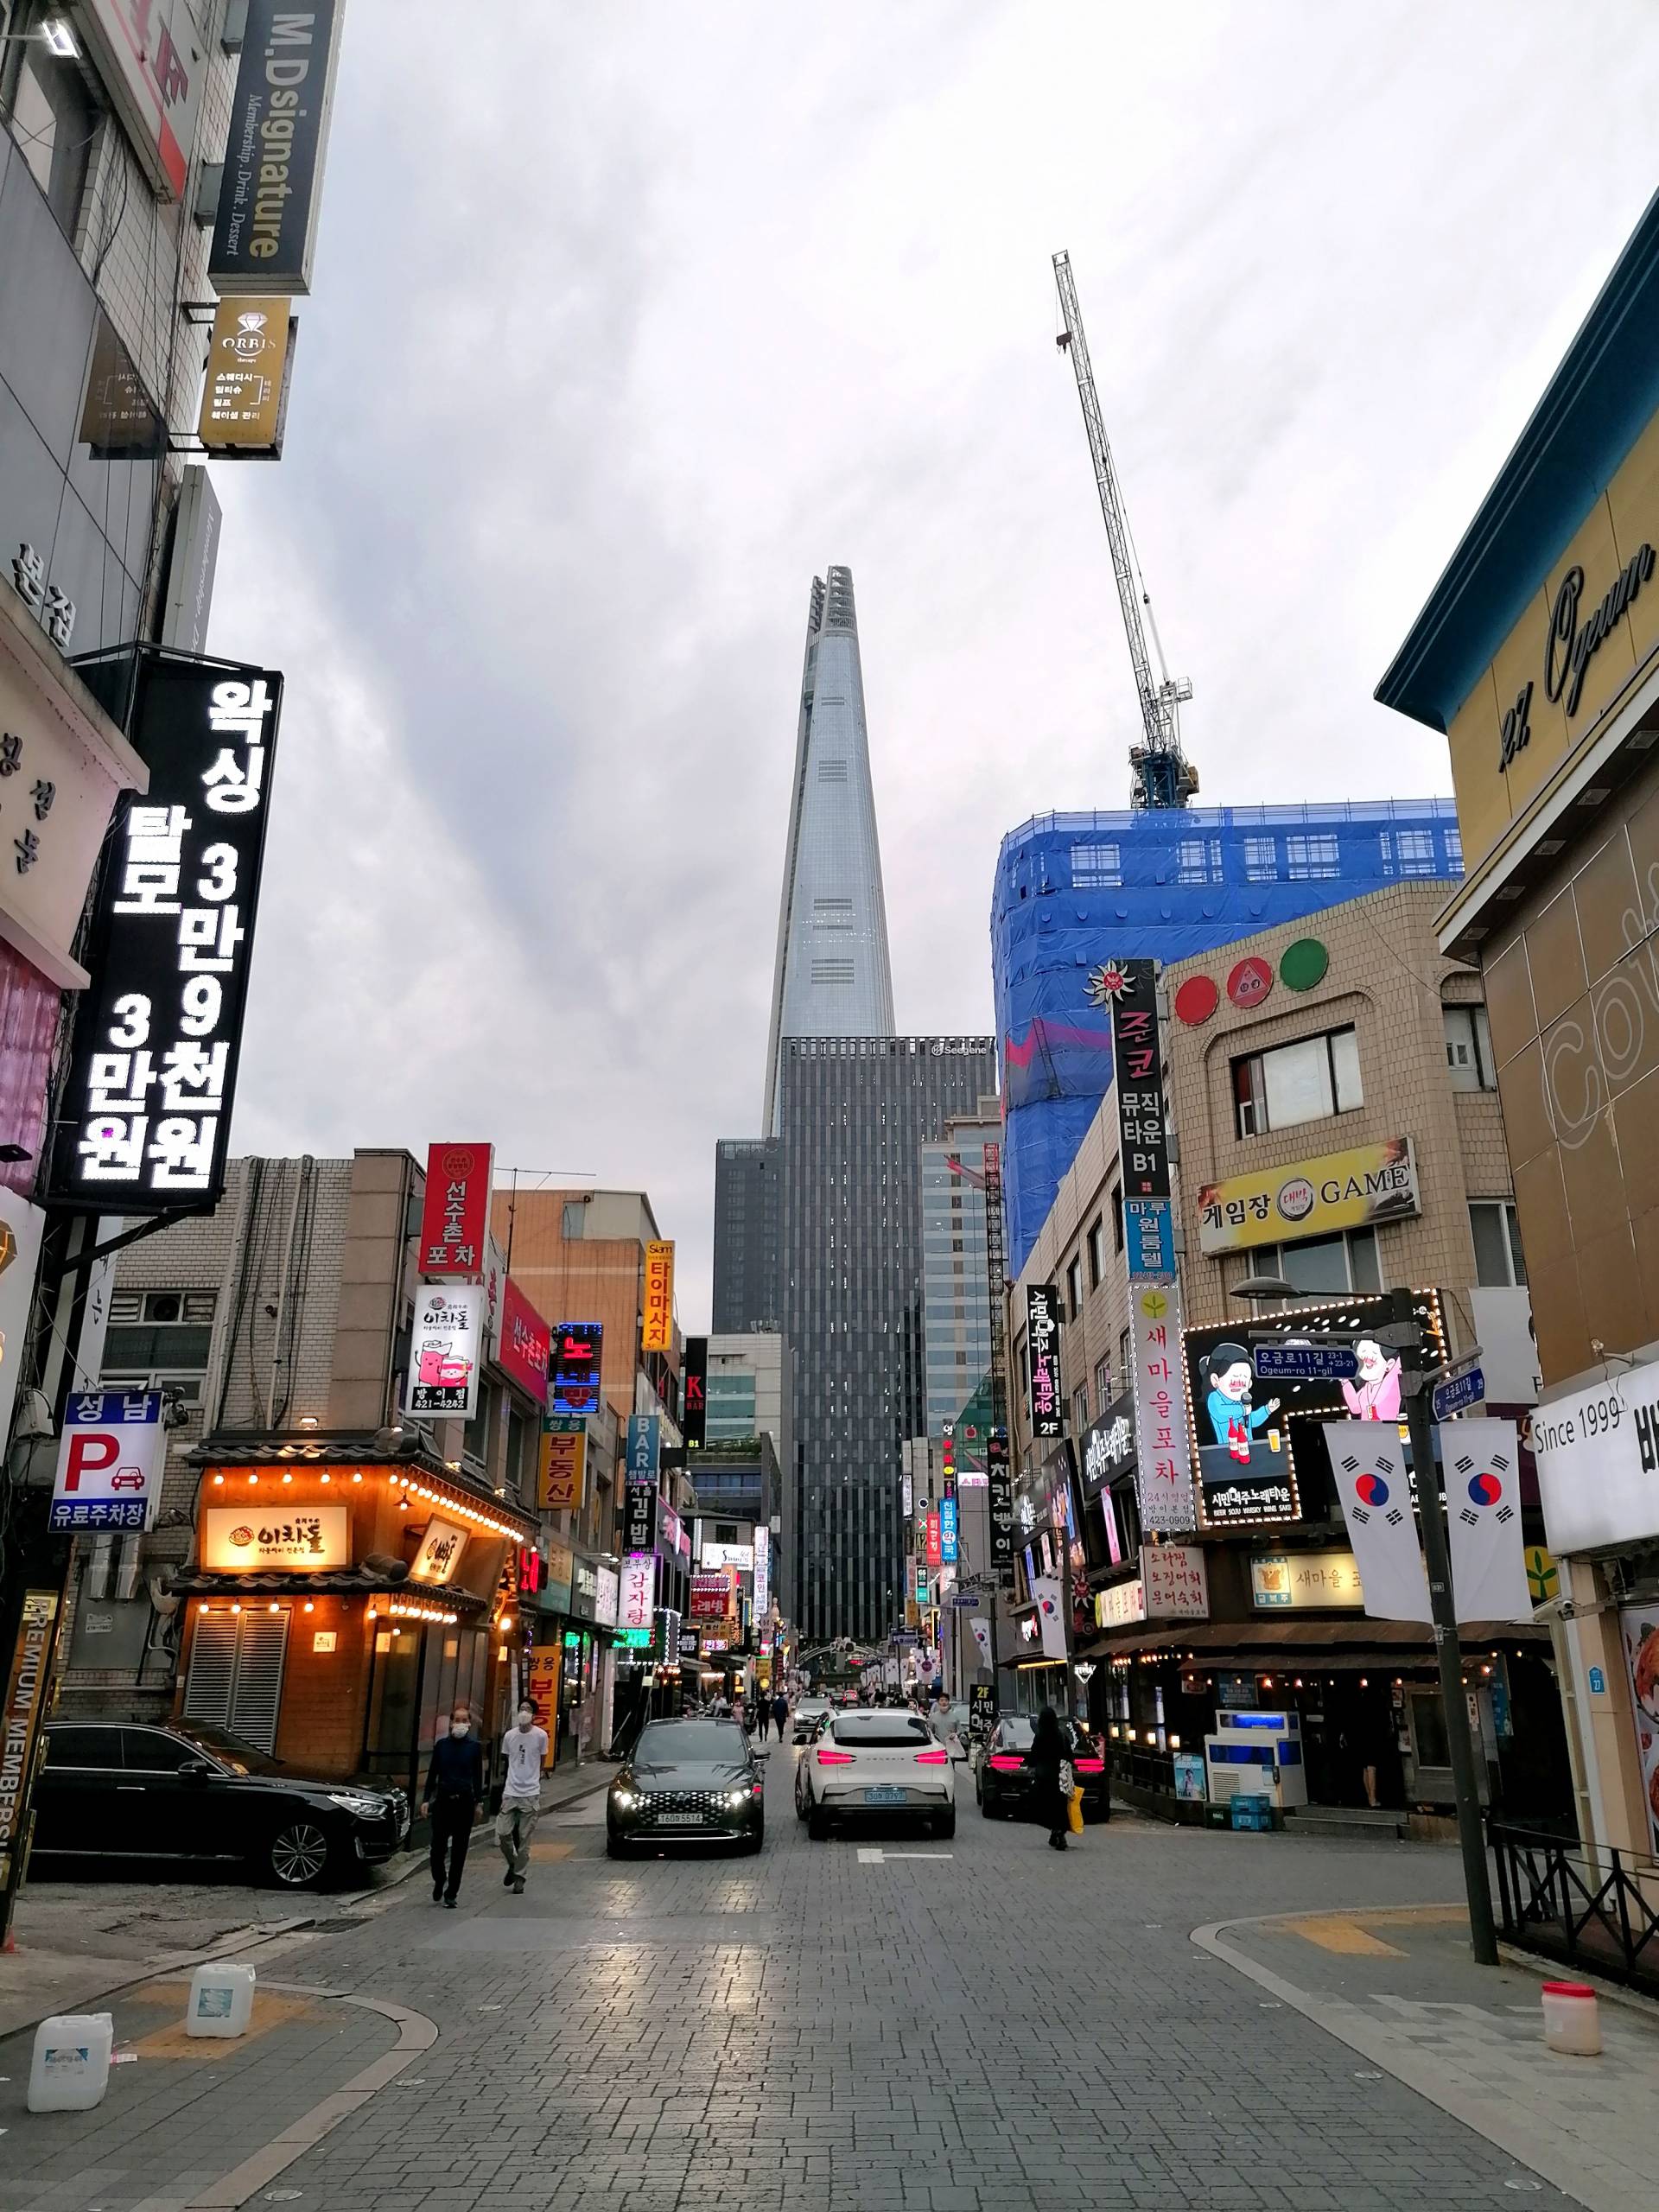 Straßen in der Nähe des Olympischen Parks Seoul mit Lotte Tower im Hintergrund